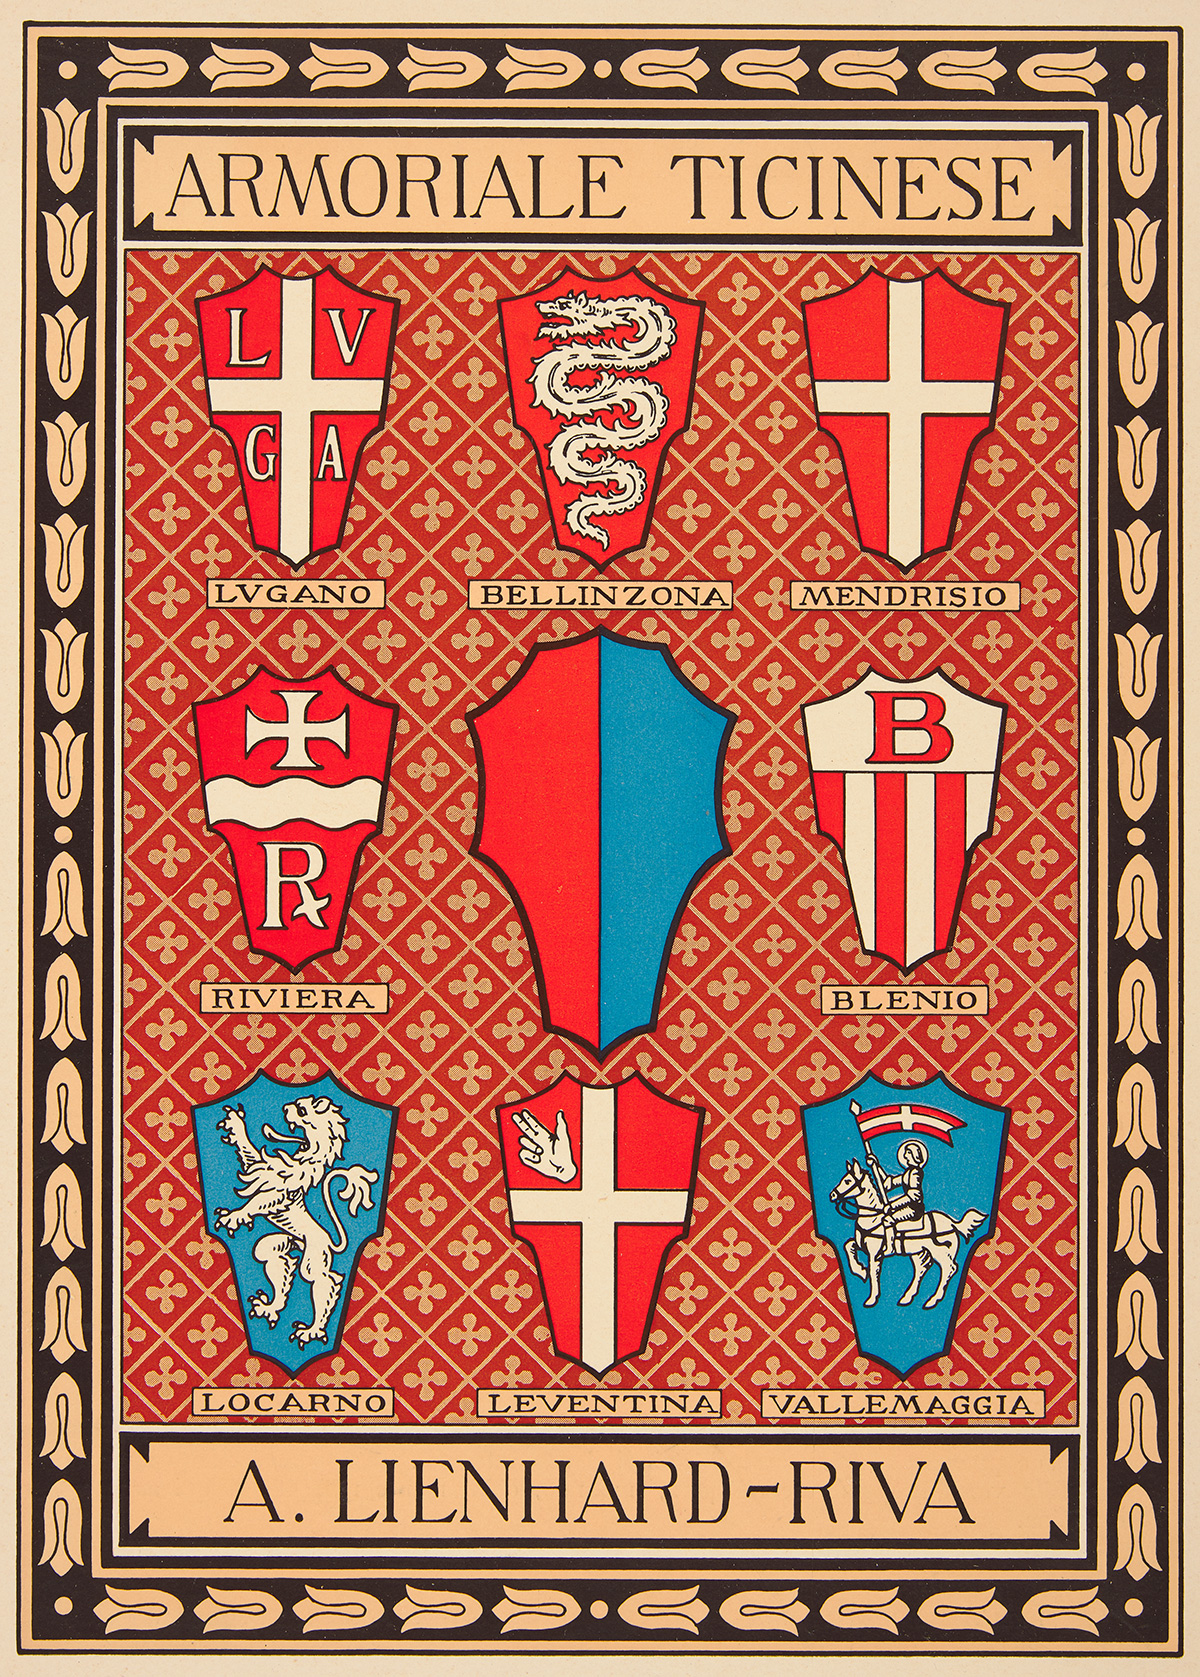 1803年に設立されたティチーノ州の8つの地区の紋章。